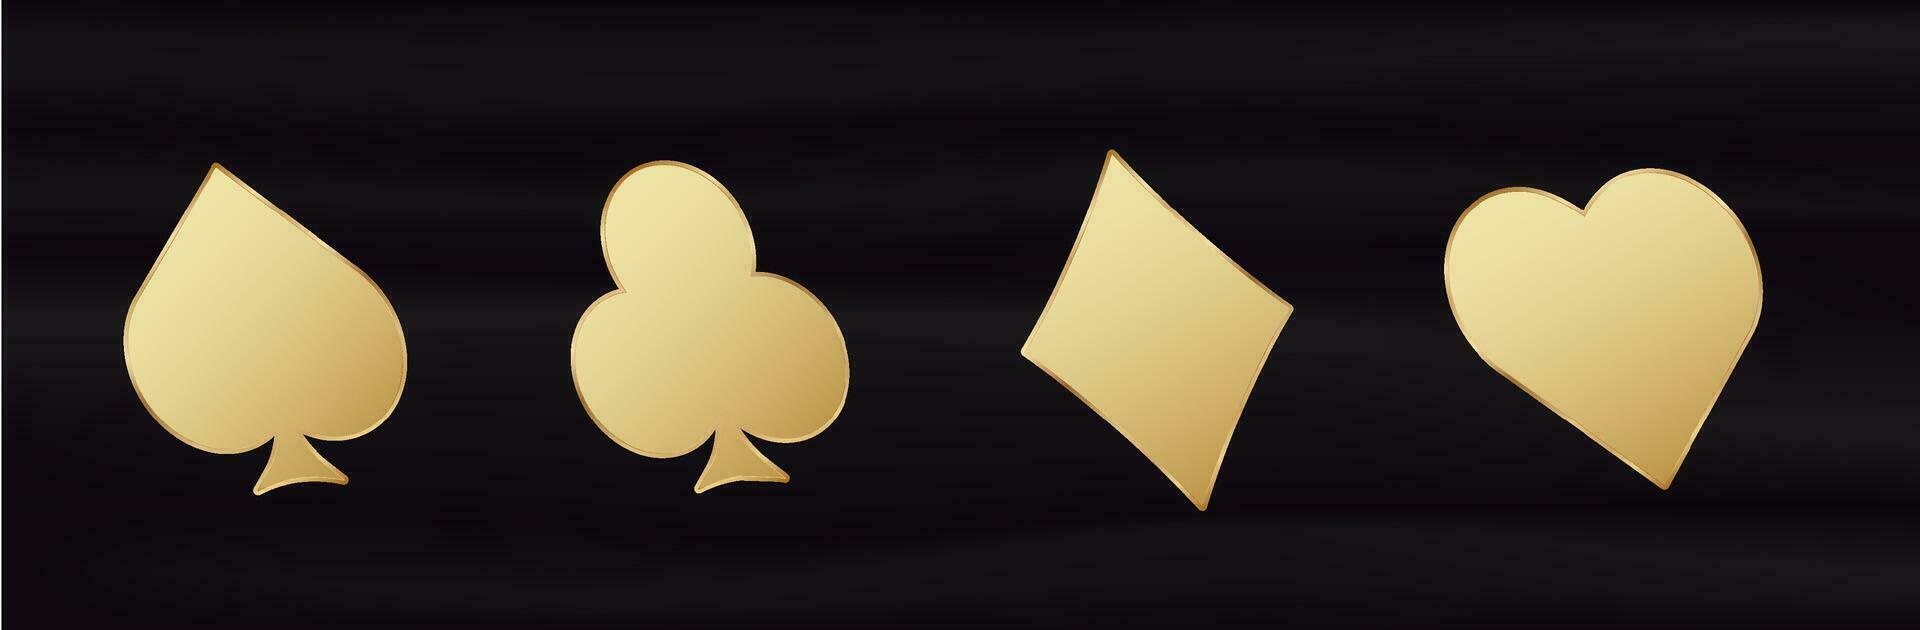 dorado tarjeta 3d trajes. amarillo degradado símbolo de juego suerte en póker y exitoso juego en casino con veintiuna y apuestas vector